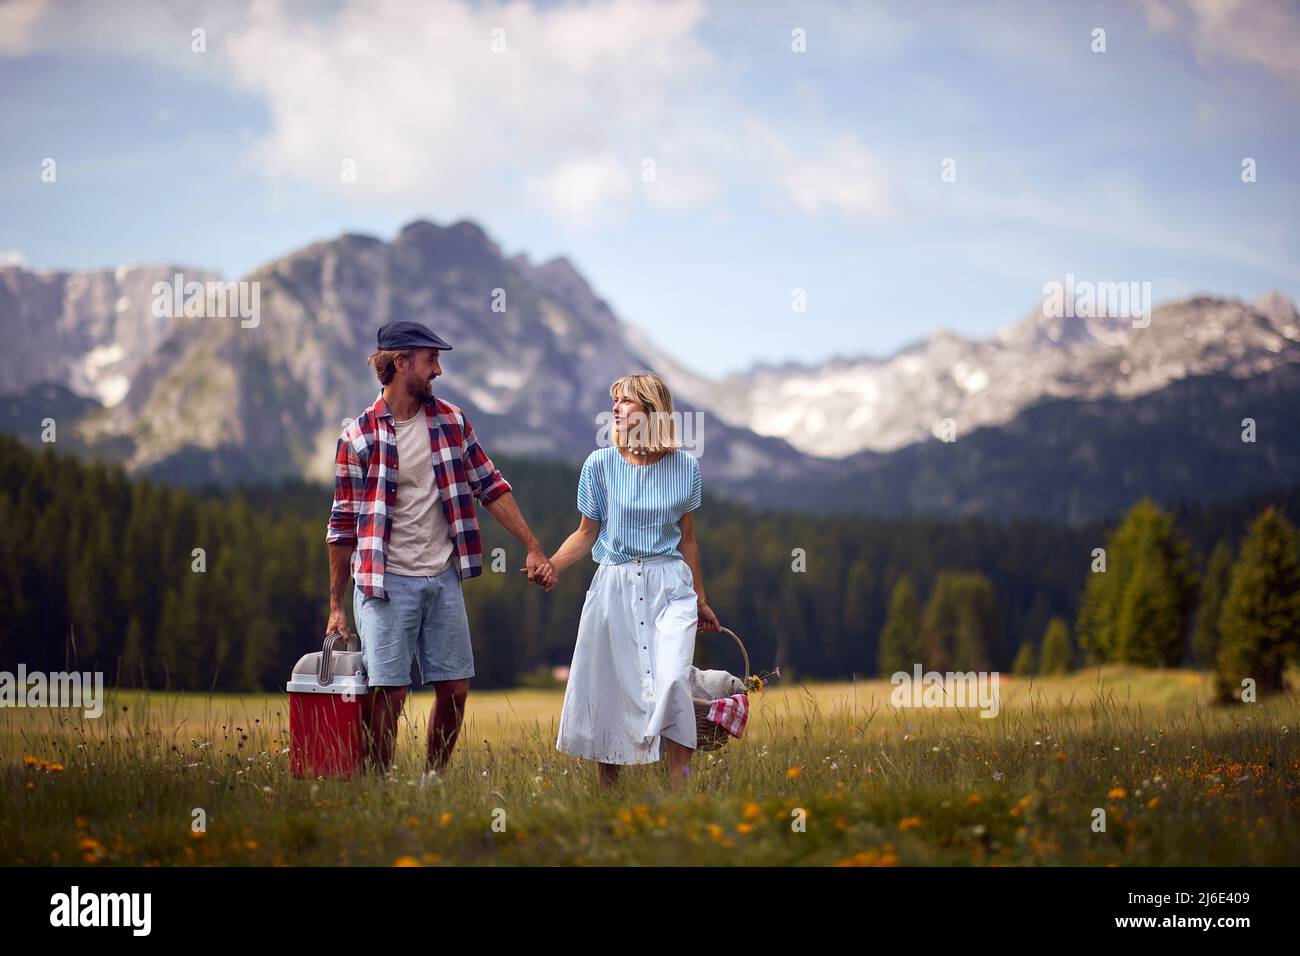 Coppia godendo picnic in nature.Young allegro sorridente coppia in amore tenendo le mani e camminando nella natura in una bella giornata. Foto Stock